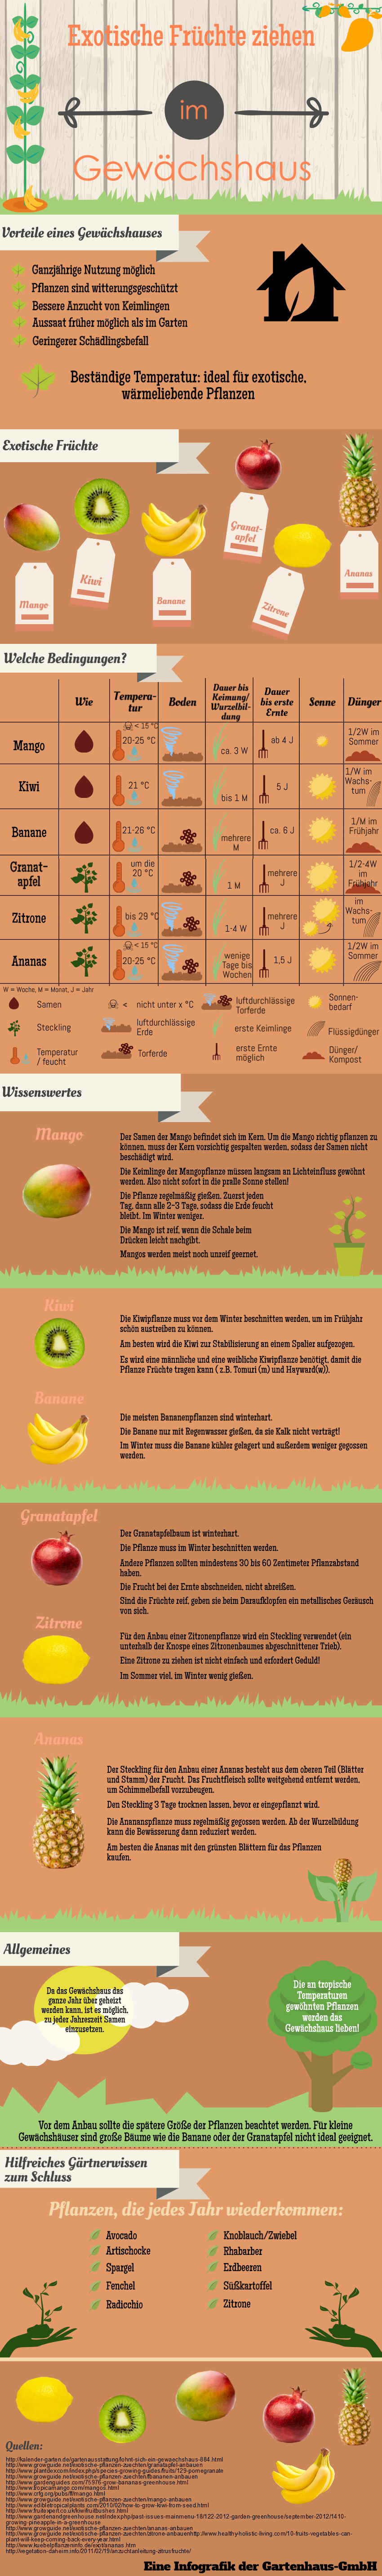 Exotische Fruechte im Gewaechshaus - Infografik